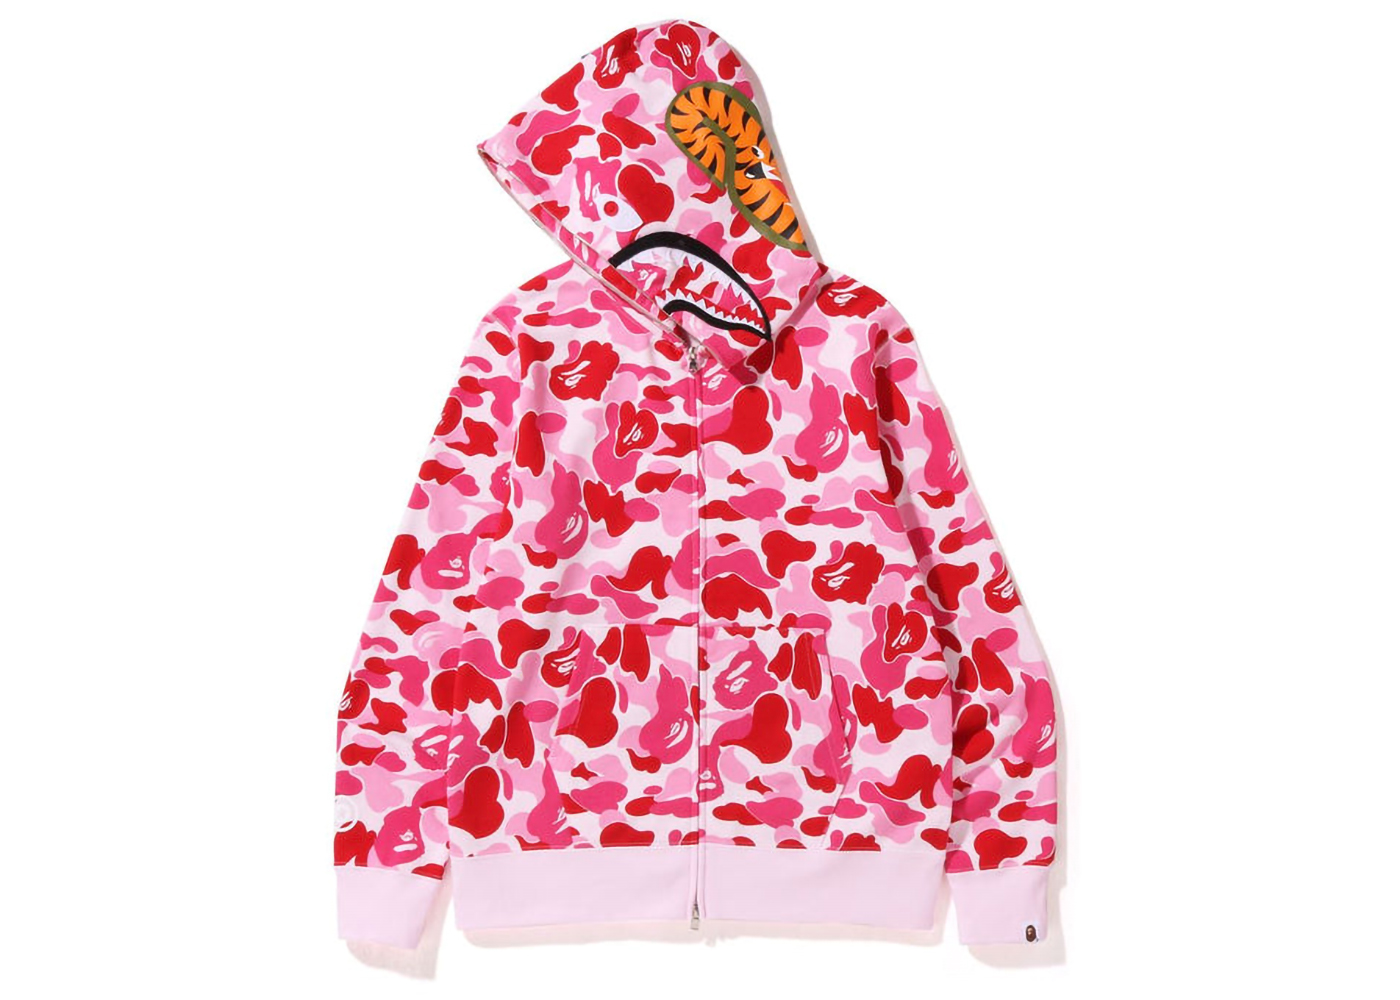 レディースBape sweater pink camo shark Size M